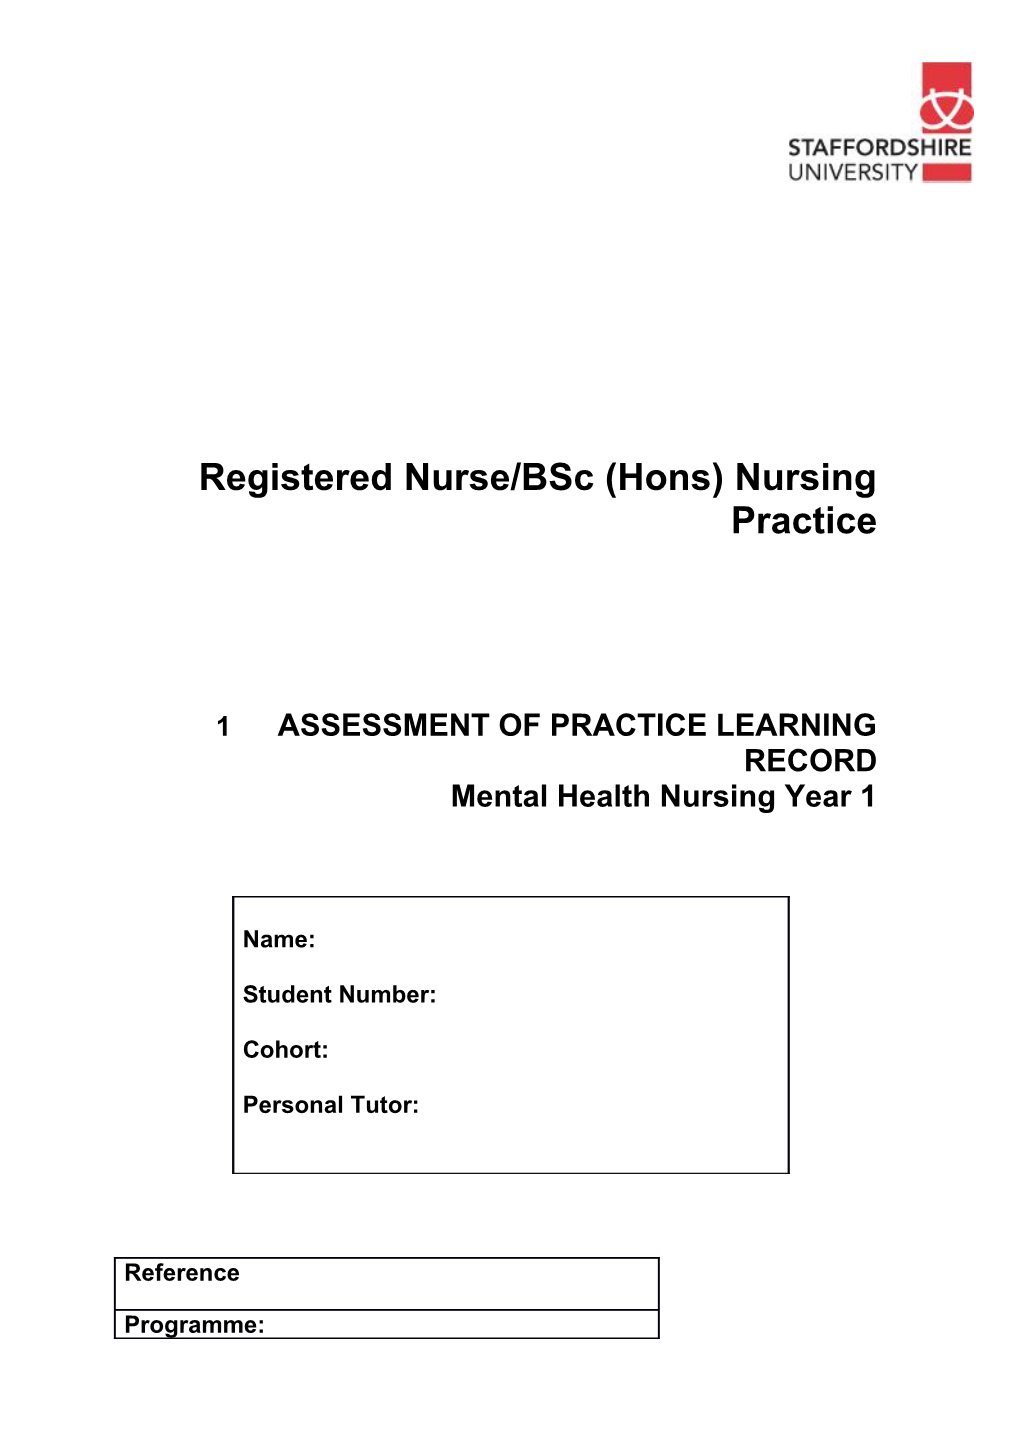 Registered Nurse/Bsc (Hons) Nursing Practice